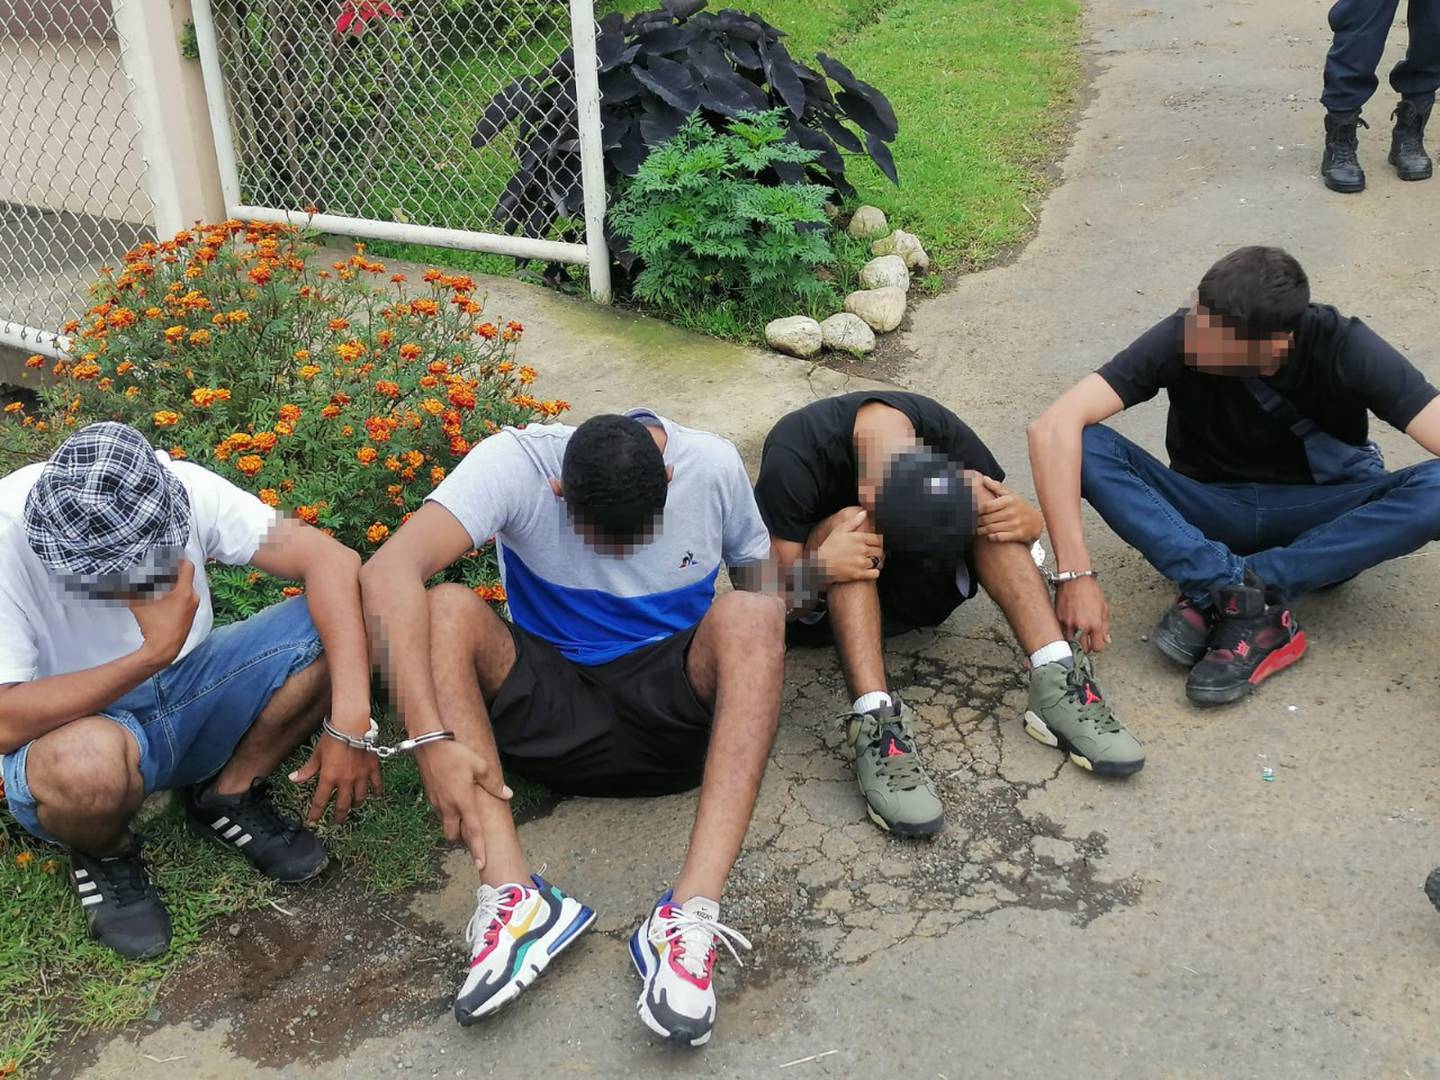 Esto son cuatro de los cinco veiteañeros detenidos por la Policía como sospechosos de asaltar al trailero. Foto: Cortesía MSP.